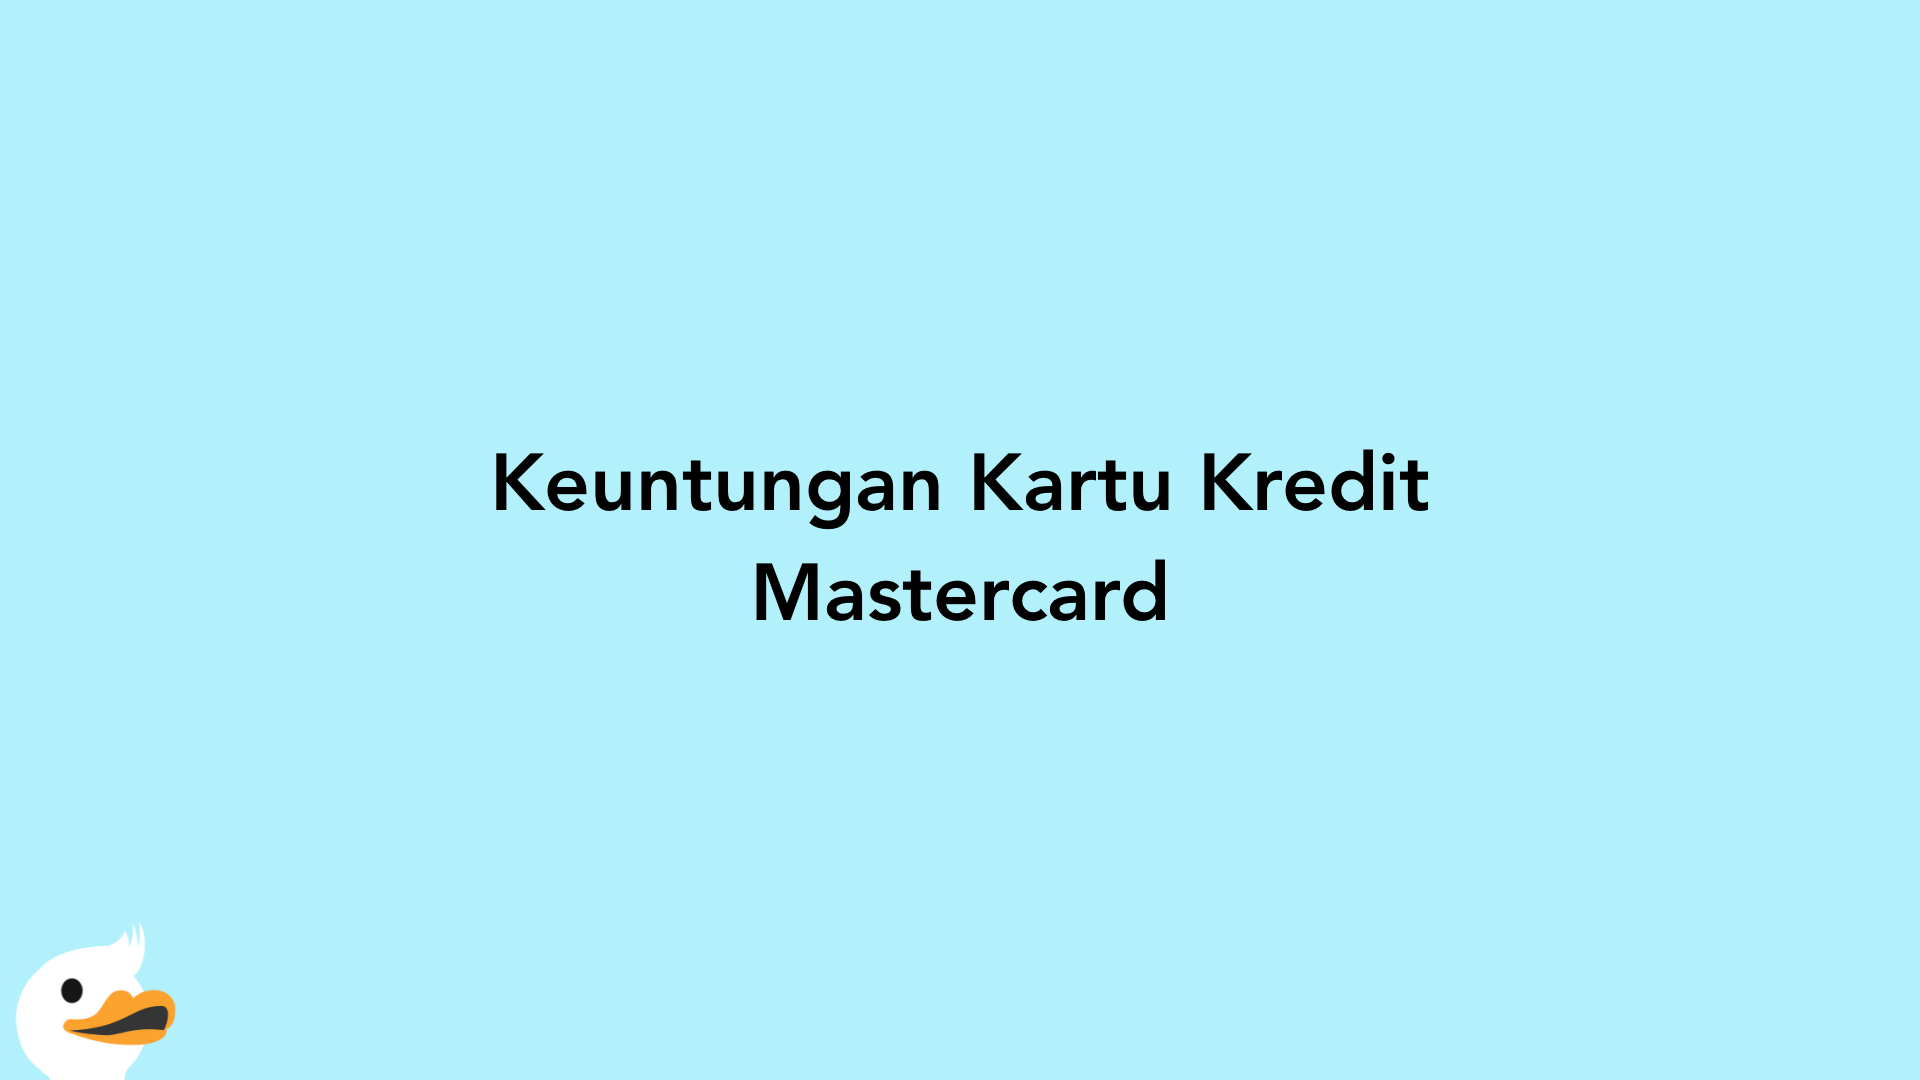 Keuntungan Kartu Kredit Mastercard